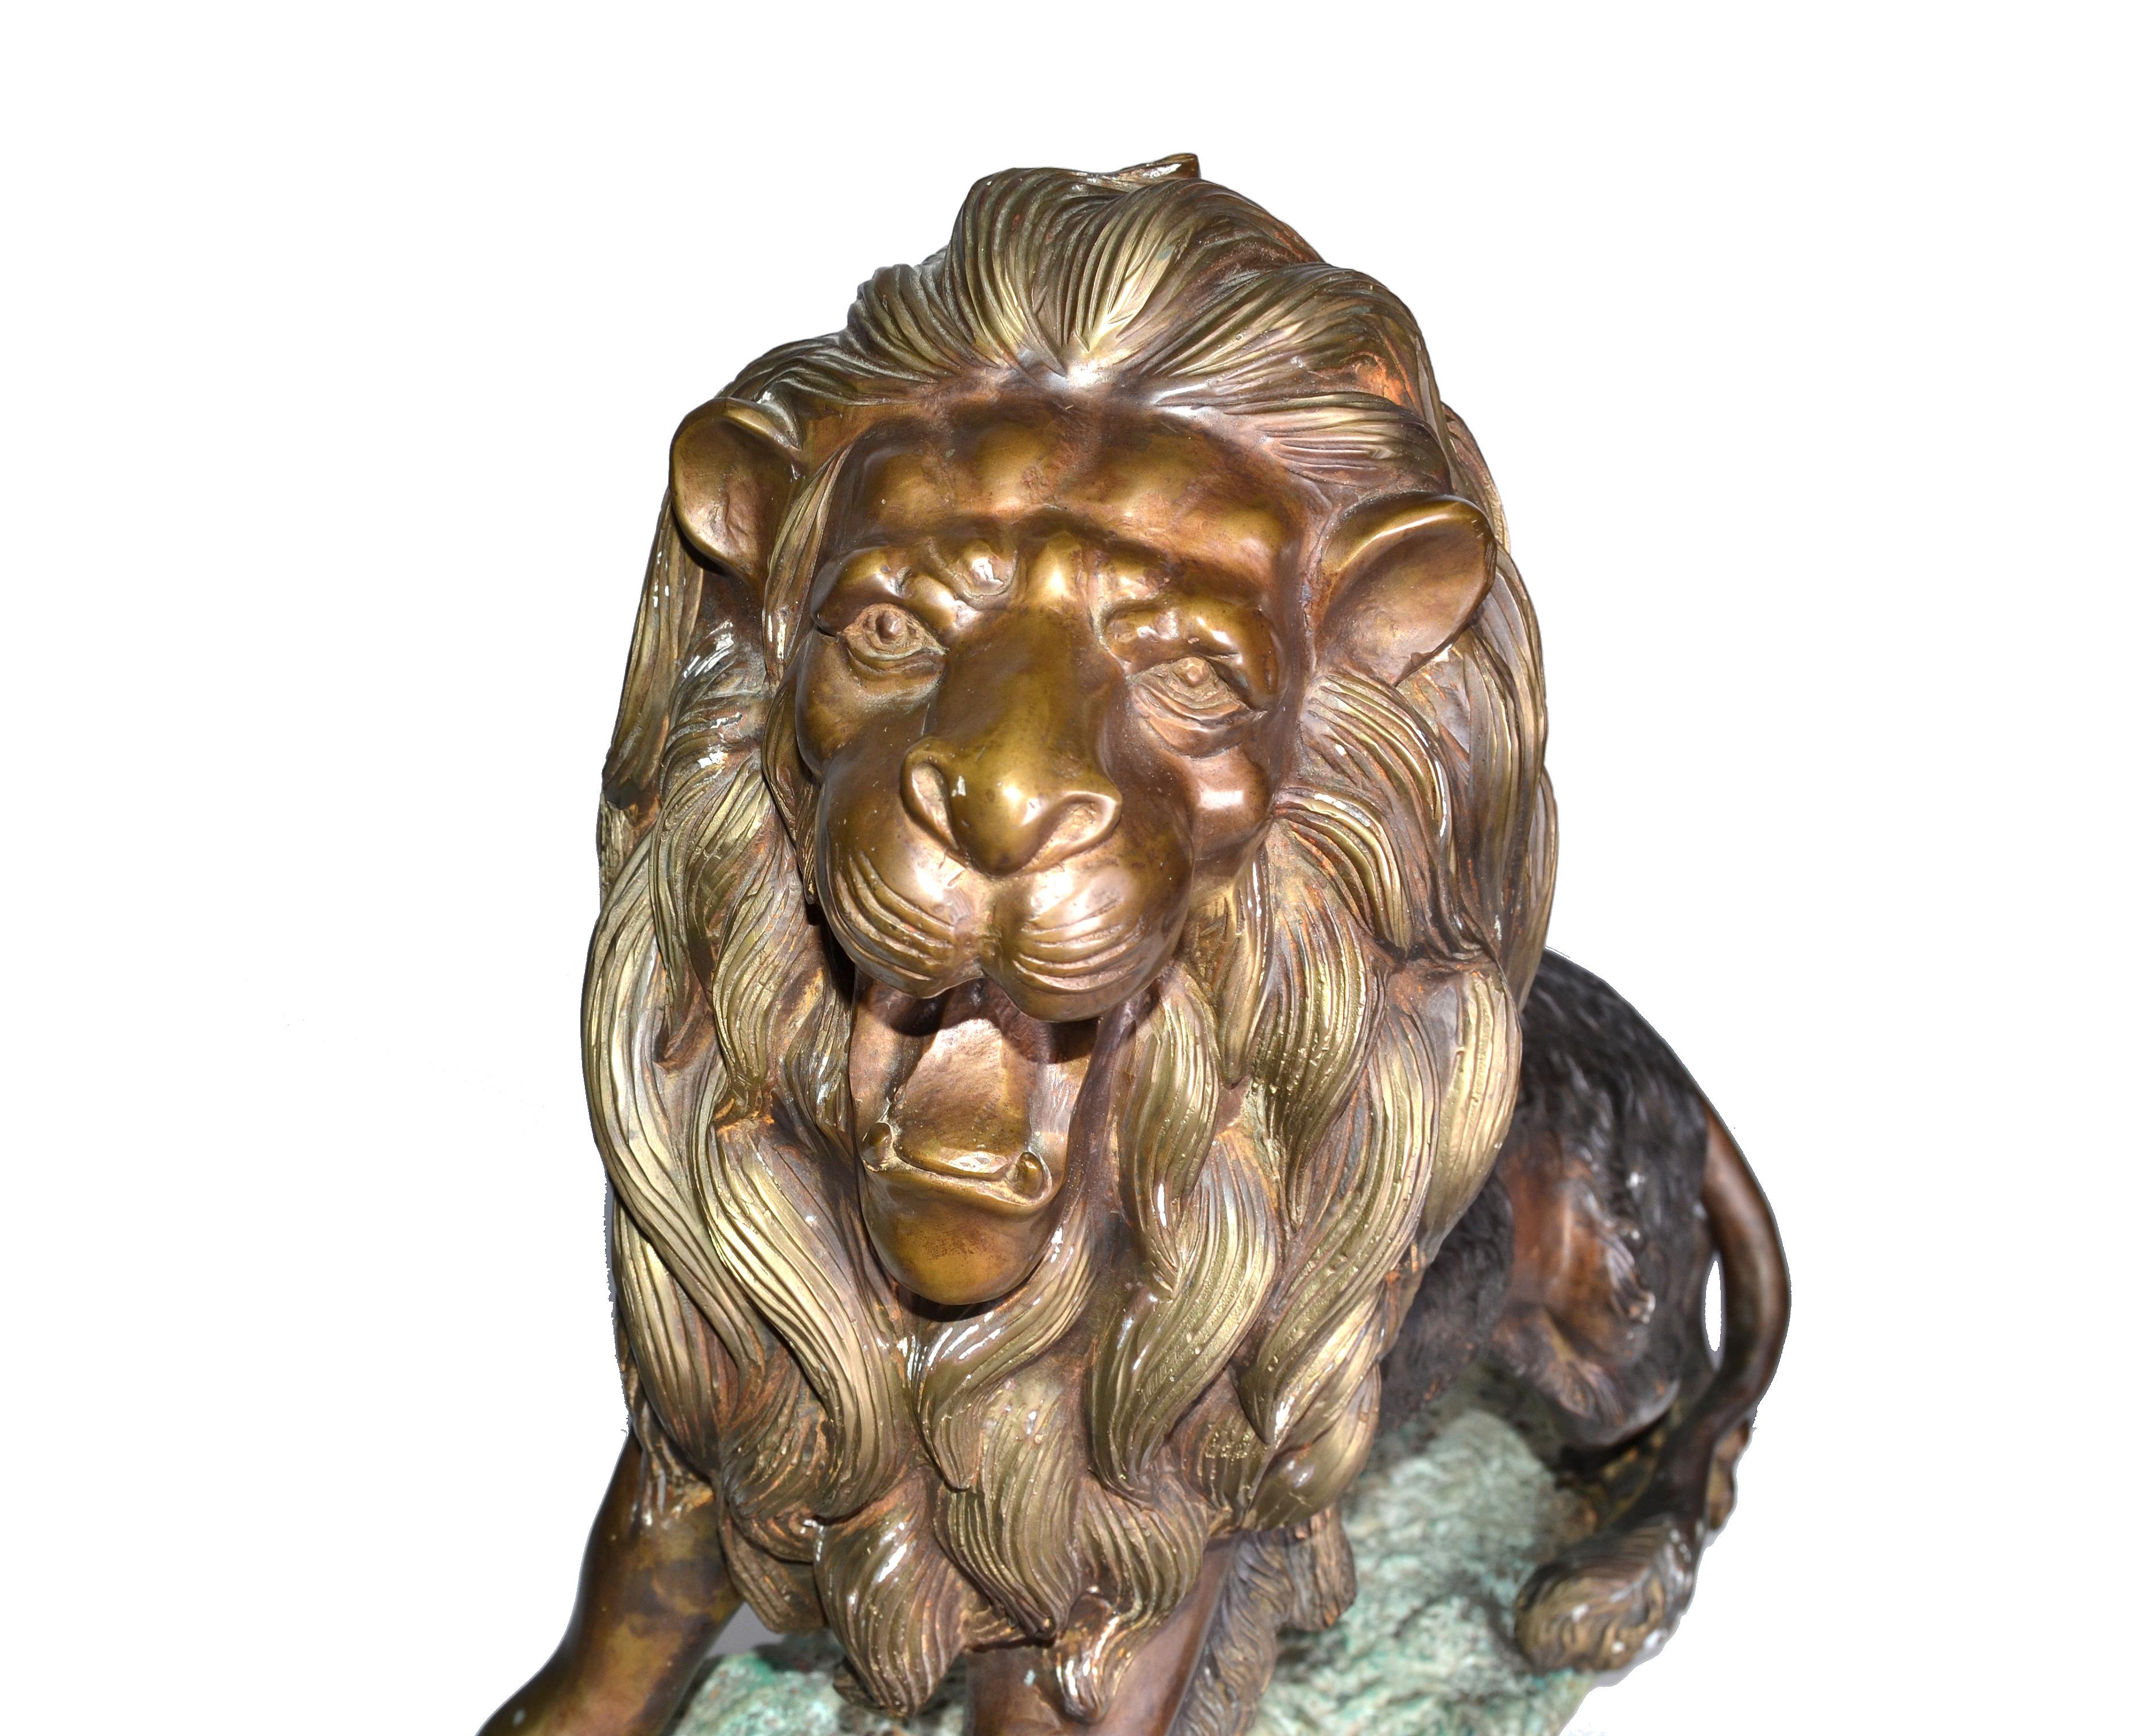 Grand et très lourd lion néoclassique français en bronze massif sur une base en marbre.
Pas de marquage.
Très détaillé et très bien fait.